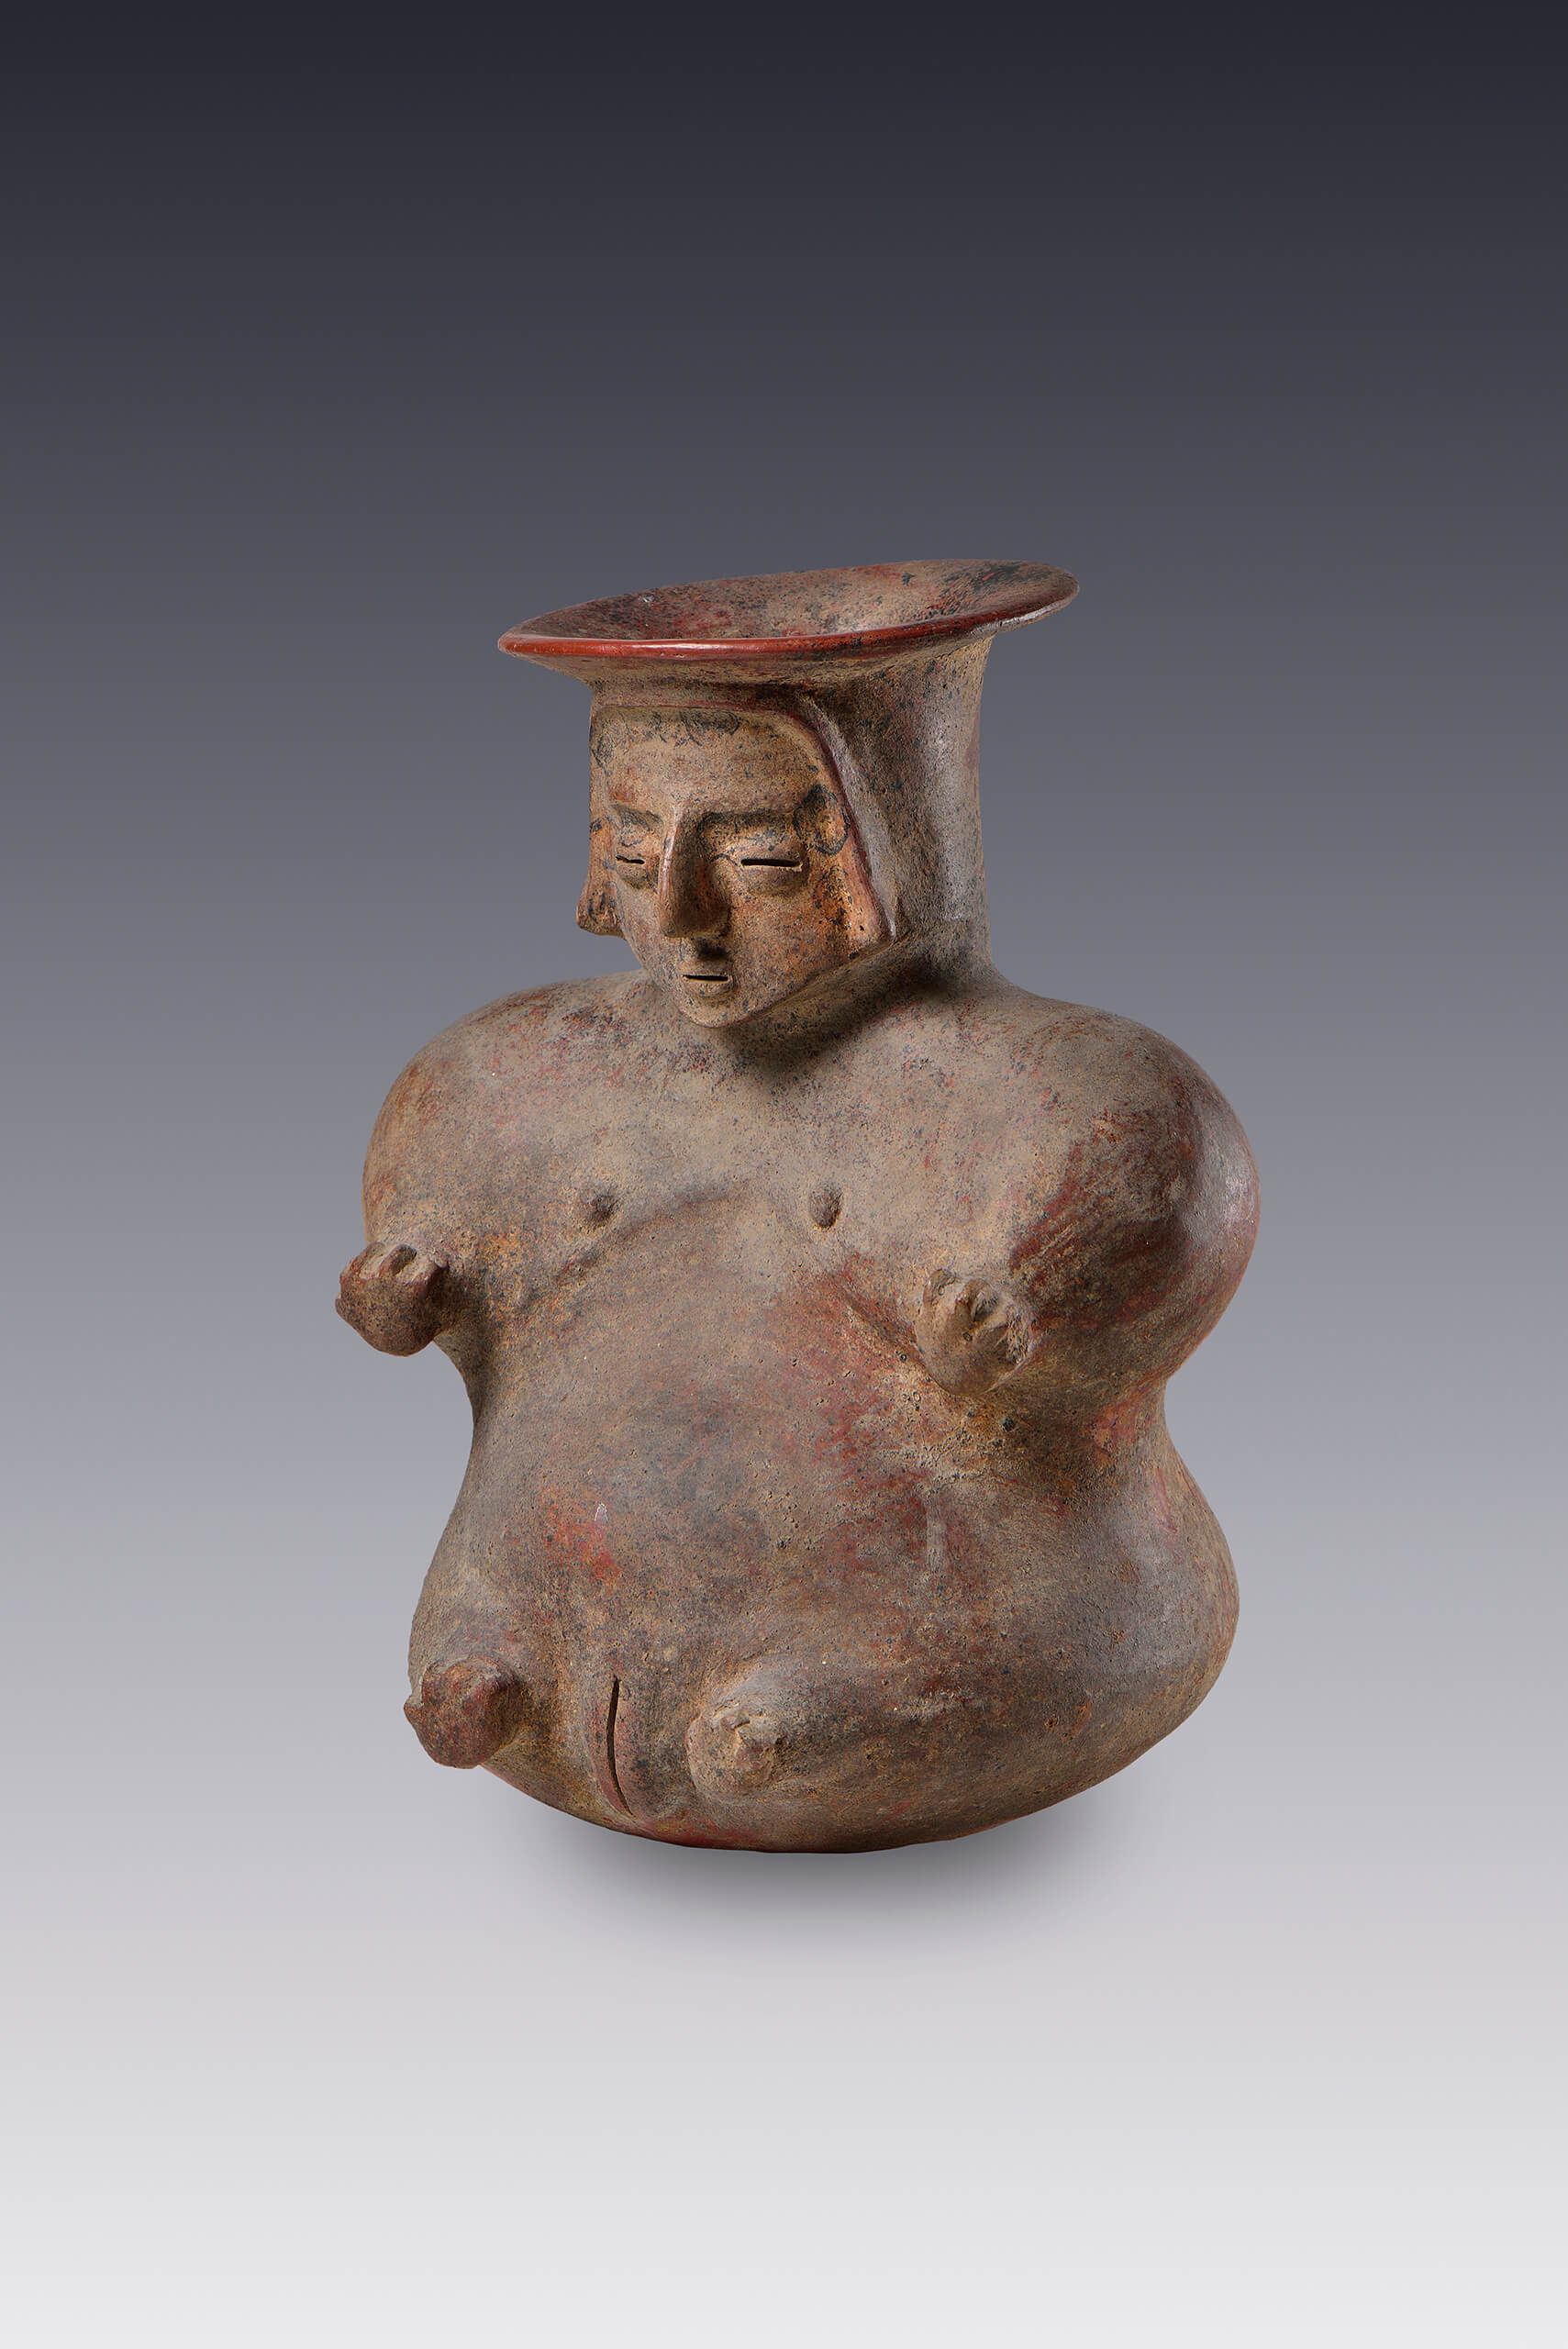 Vasija de mujer con vientre abultado | El México antiguo. Salas de Arte Prehispánico | Museo Amparo, Puebla